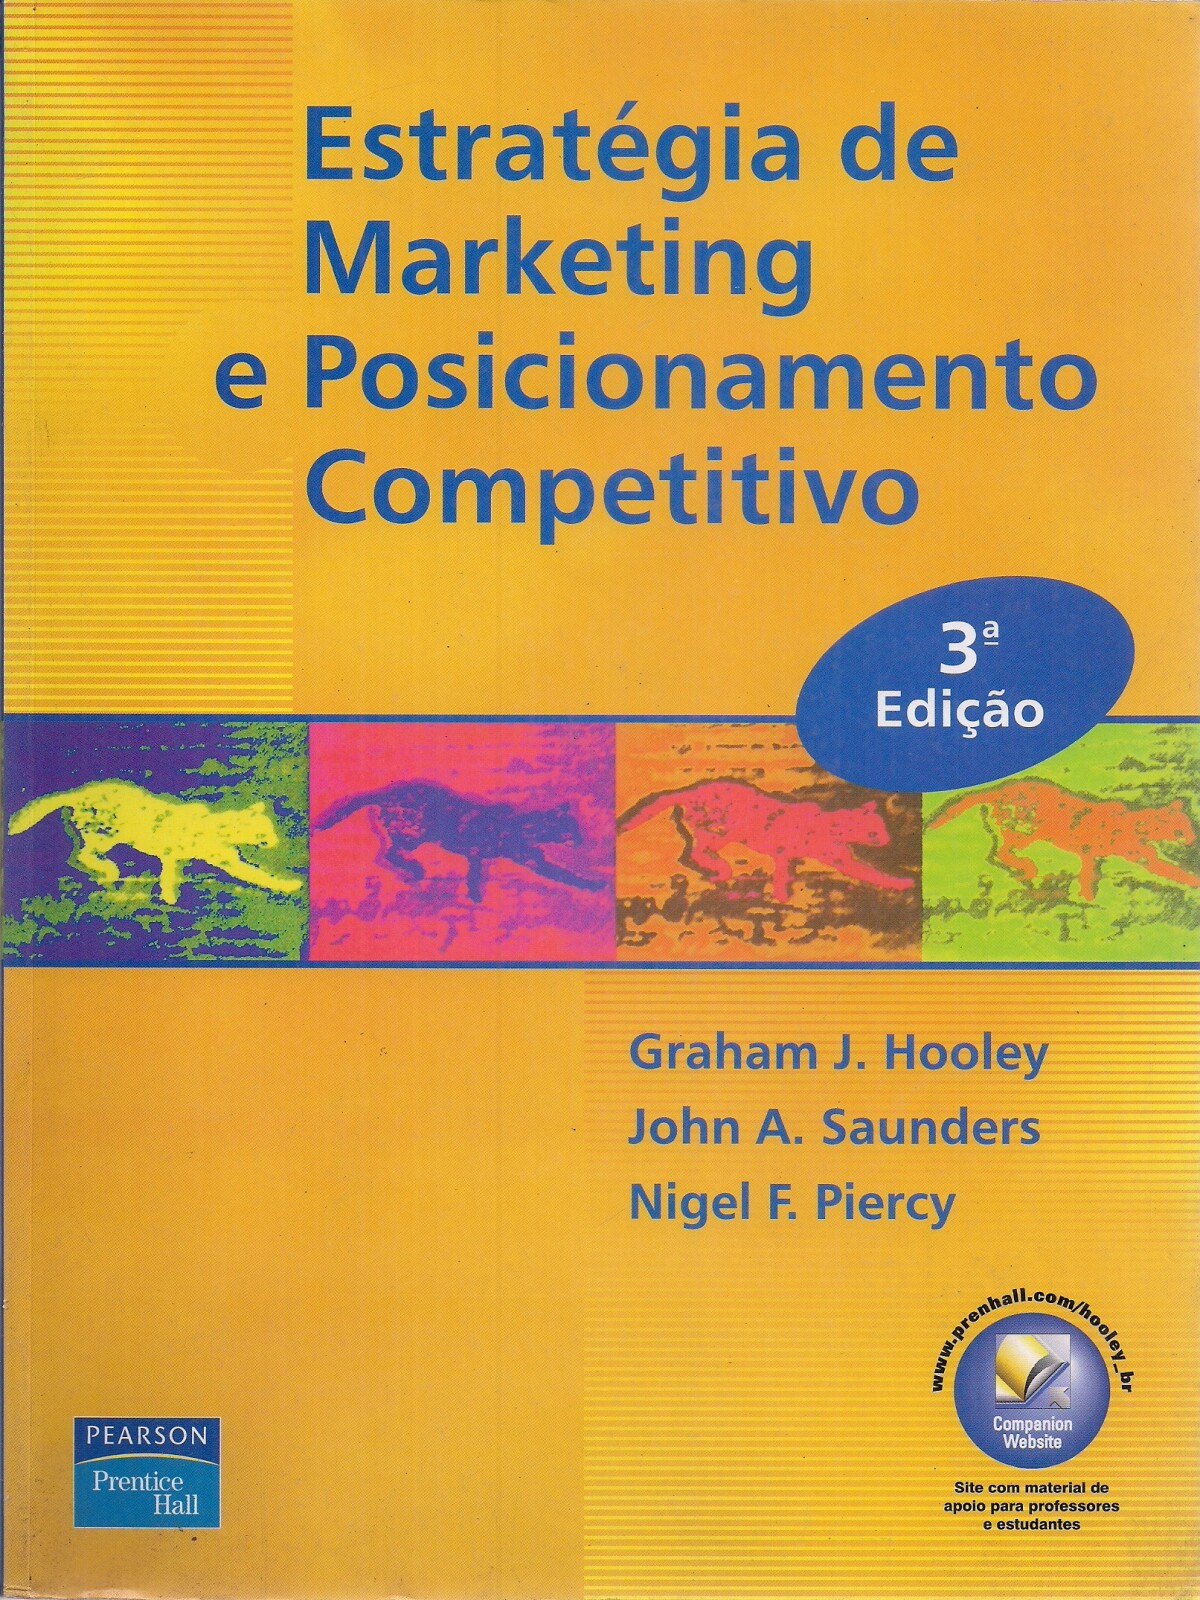 Foto 1 - Estratégia de Marketing e Posicionamento Competitivo